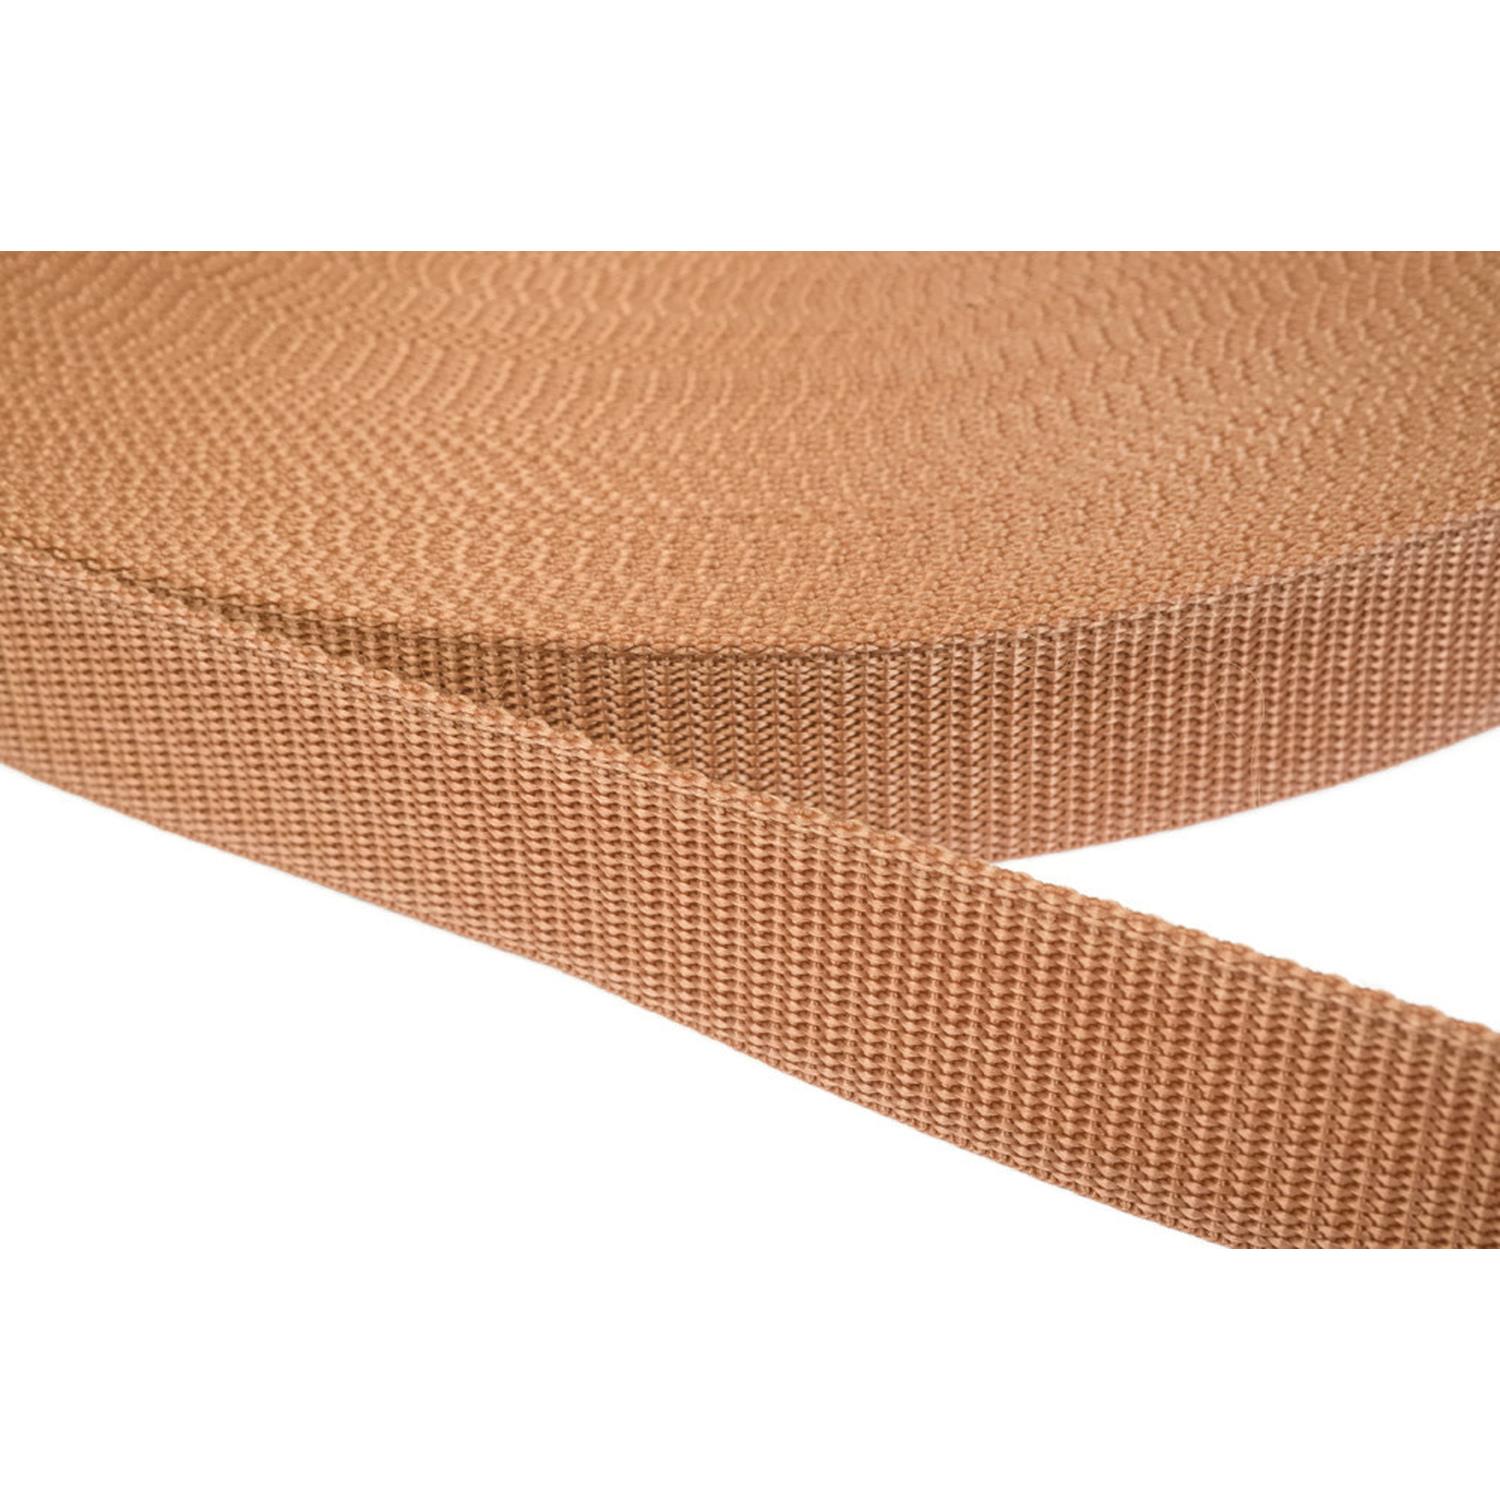 Gurtband 25mm breit aus Polypropylen in 41 Farben 06 - hellbraun 50 Meter